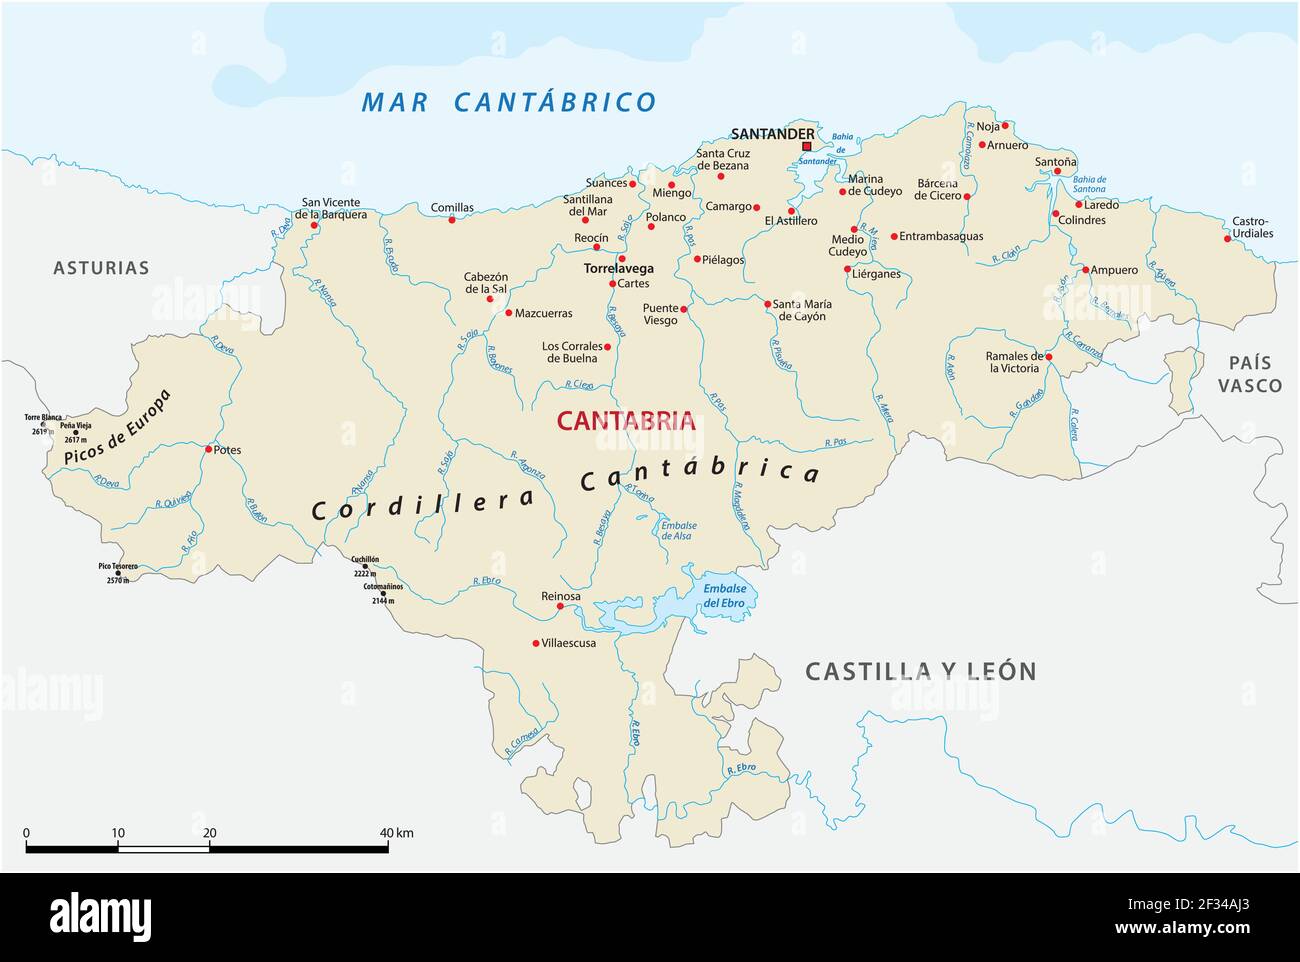 Carte vectorielle des communautés autonomes espagnoles de Cantabrie Illustration de Vecteur